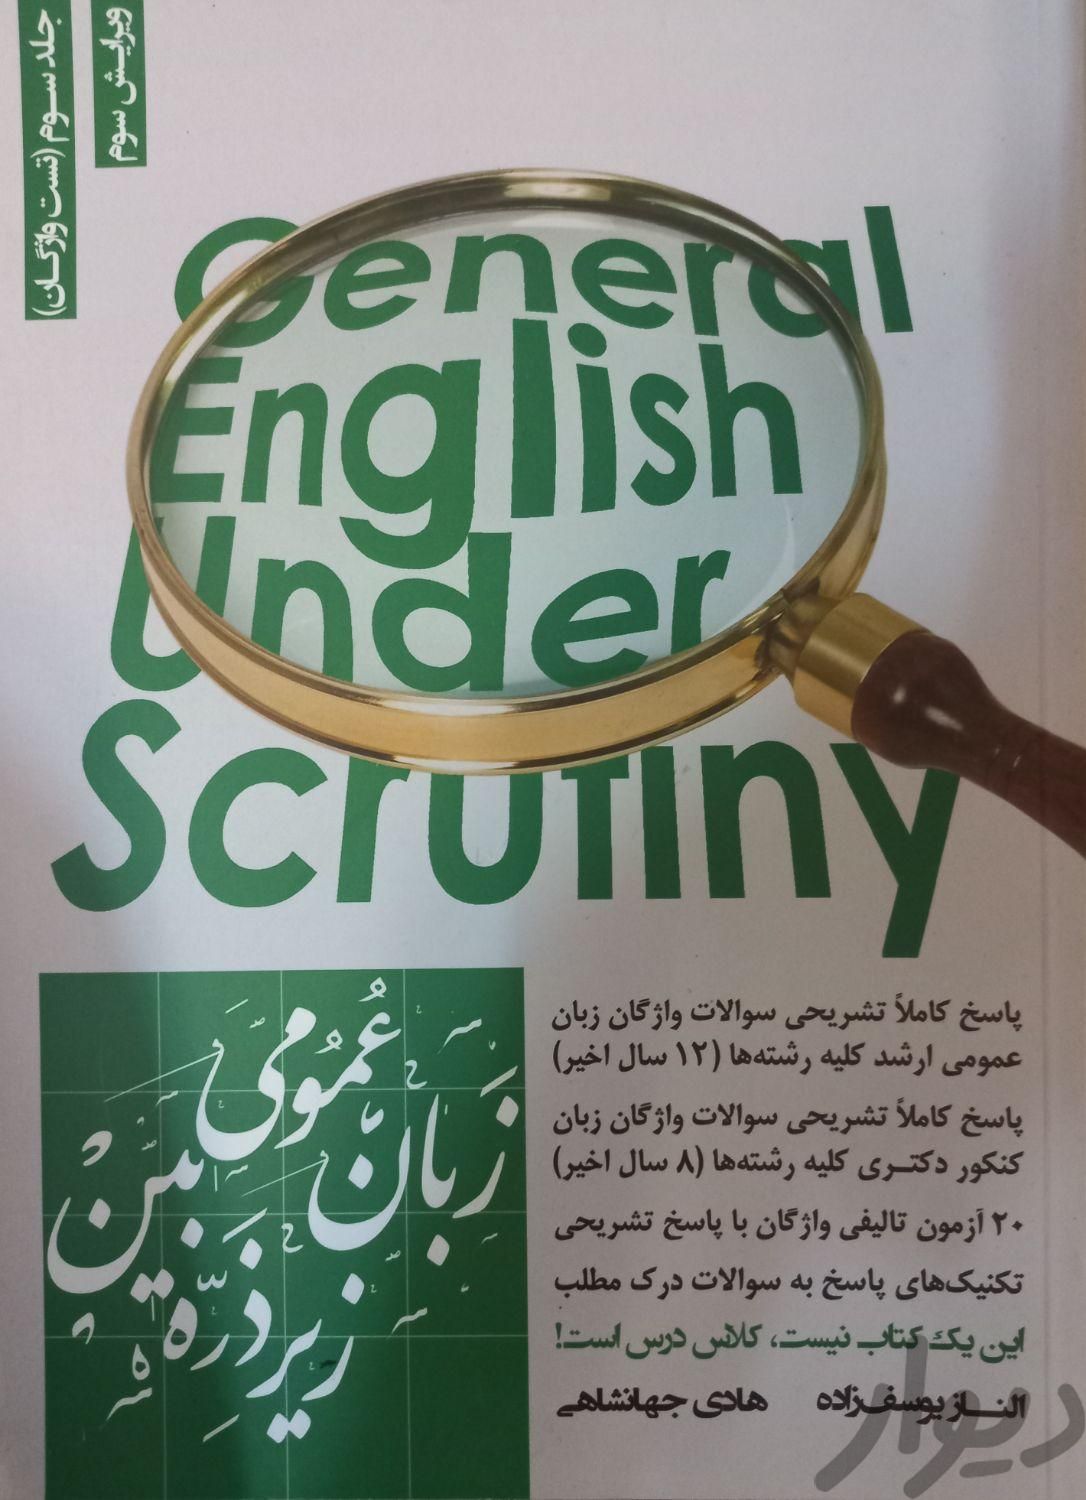 زبان عمومی دانشگاه|کتاب و مجله آموزشی|تهران, تاکسیرانی|دیوار